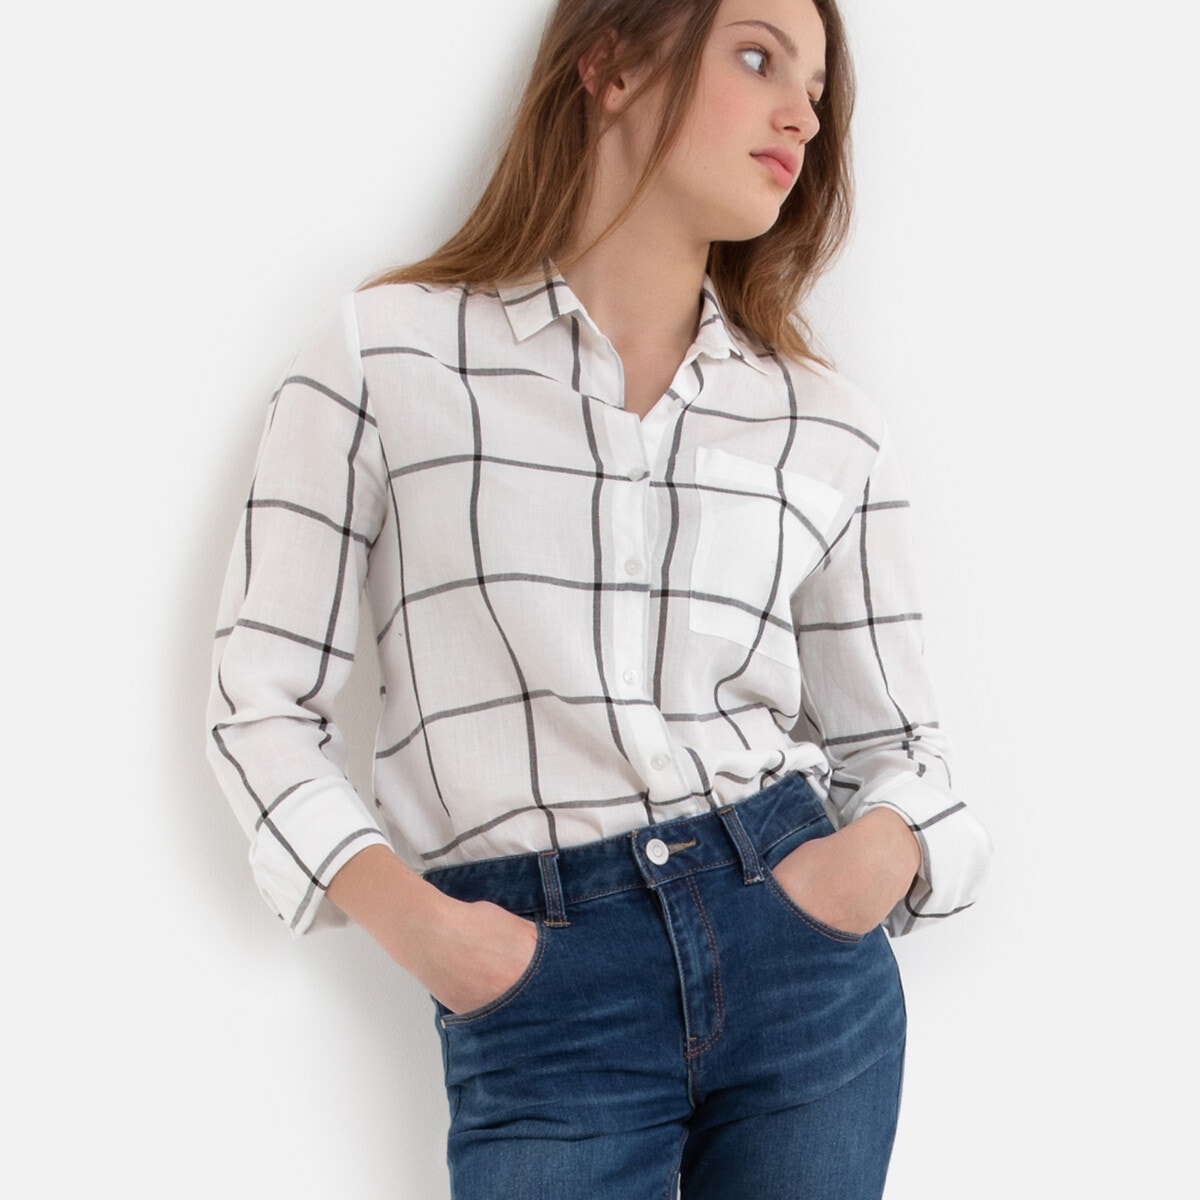 ΠΑΙΔΙ | Μπλούζες & Πουκάμισα | Πουκάμισα Καρό πουκάμισο, 10-16 ετών